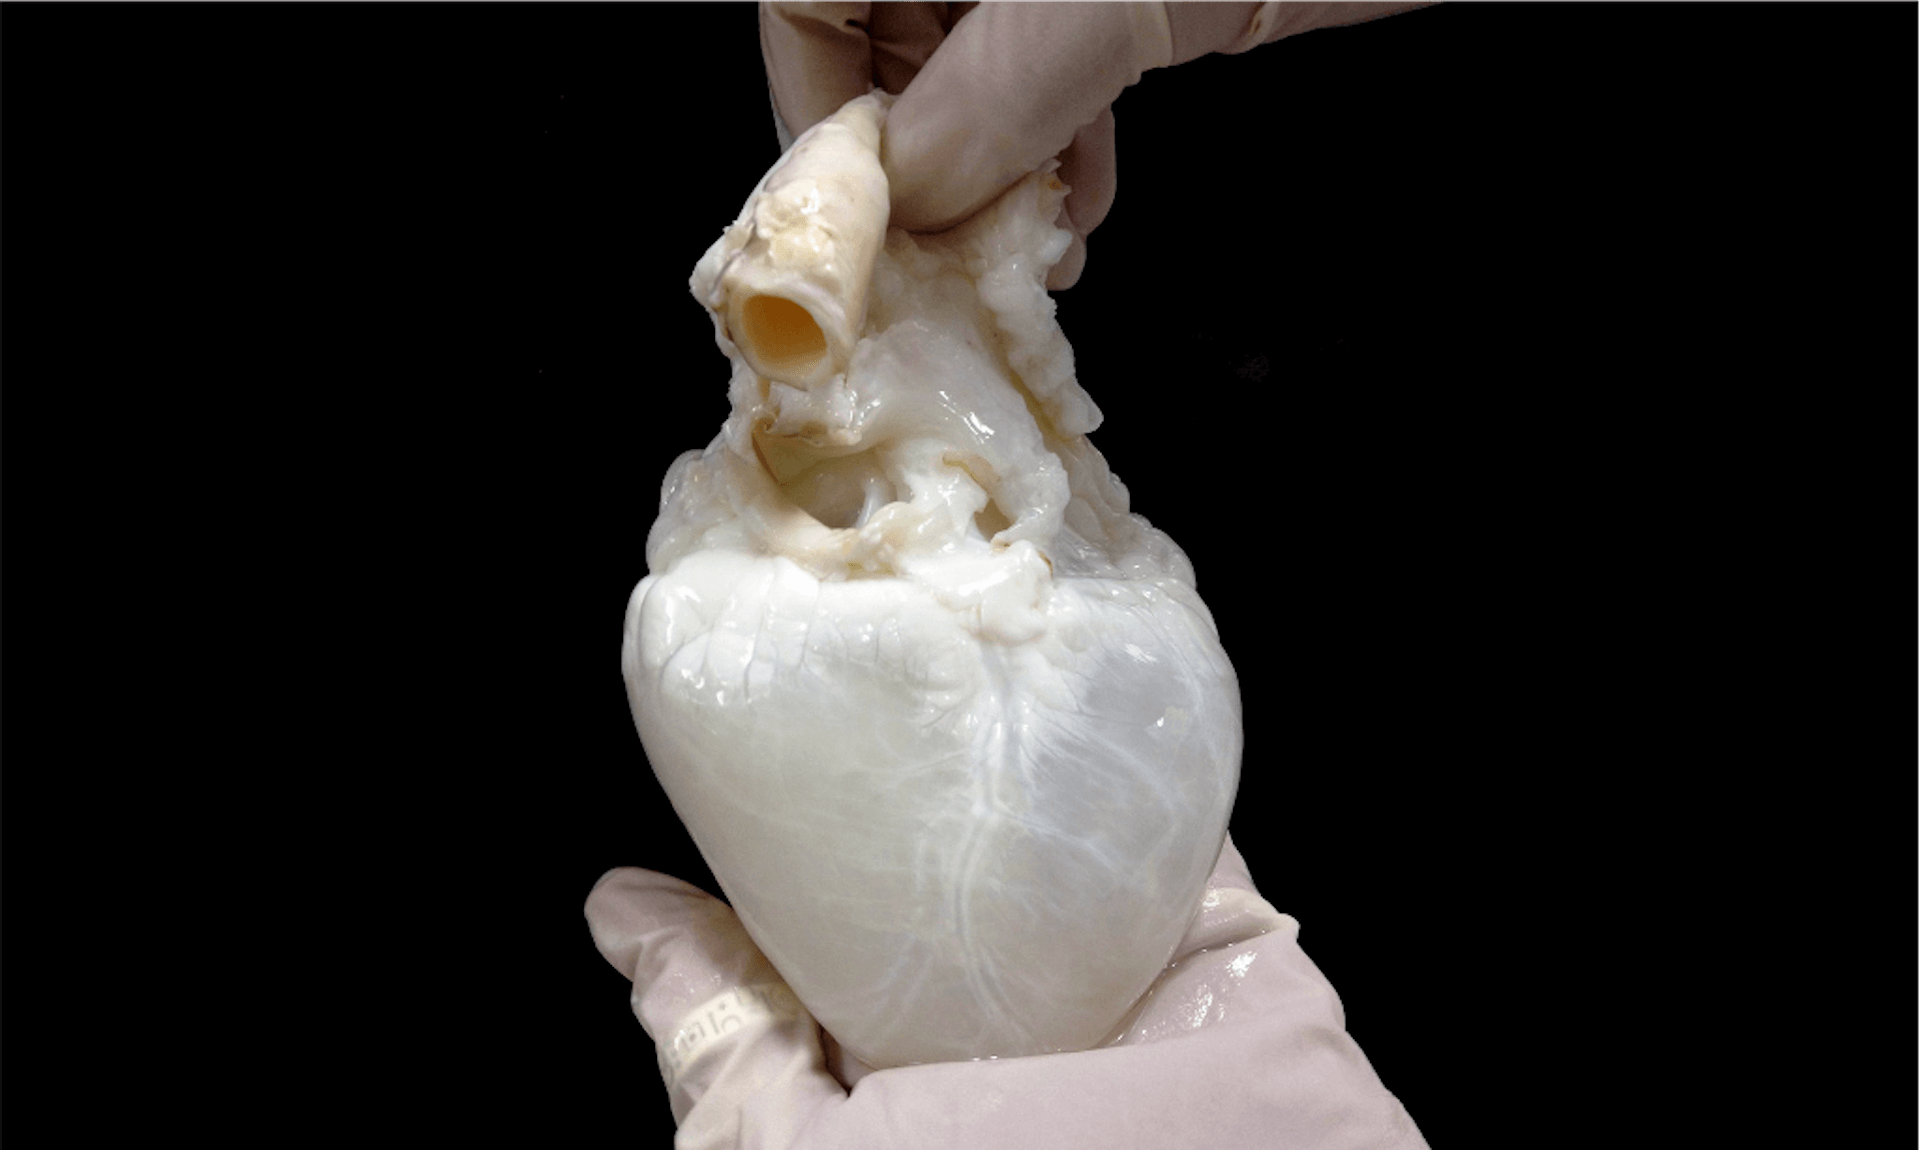 לב "רפאים" הוא לב חזיר שהוכן כך שניתן יהיה להשתיל אותו בבני אדם. סופק על-ידי דוריס טיילור